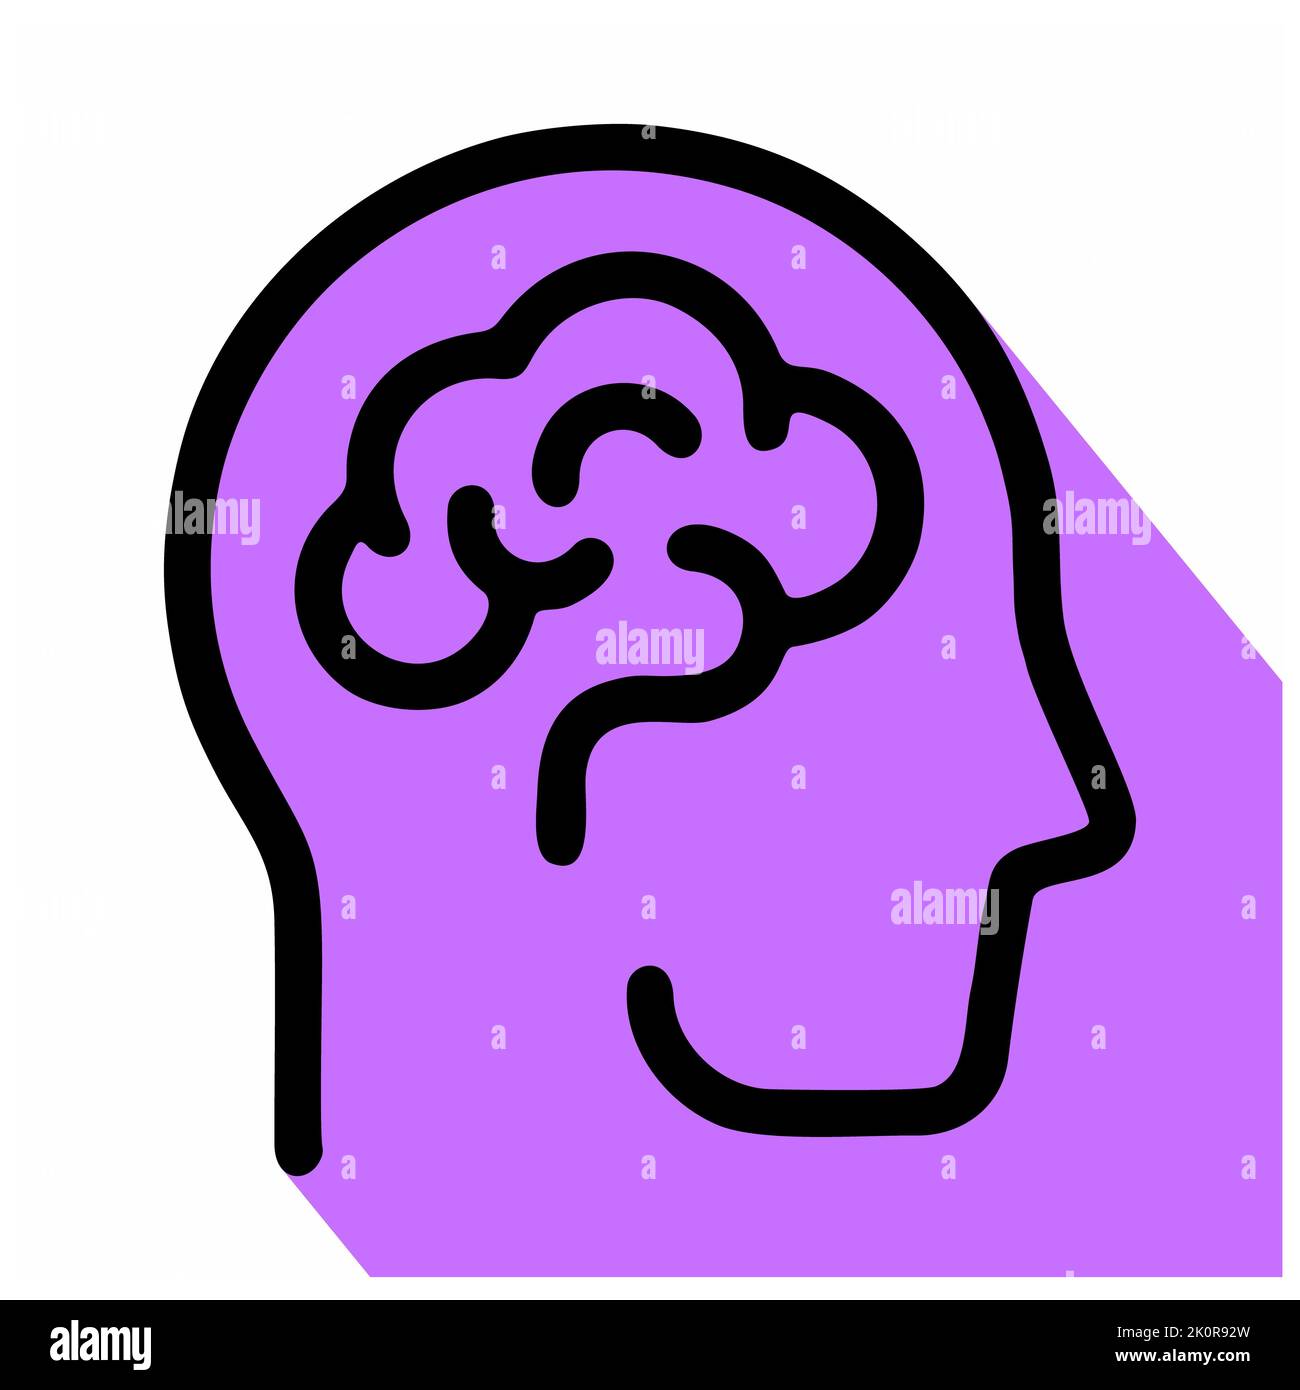 Icône du cerveau humain isolée sur fond blanc de la collection scientifique. Icône du cerveau humain symbole du cerveau humain tendance et moderne pour logo, web, app, UI. h Banque D'Images